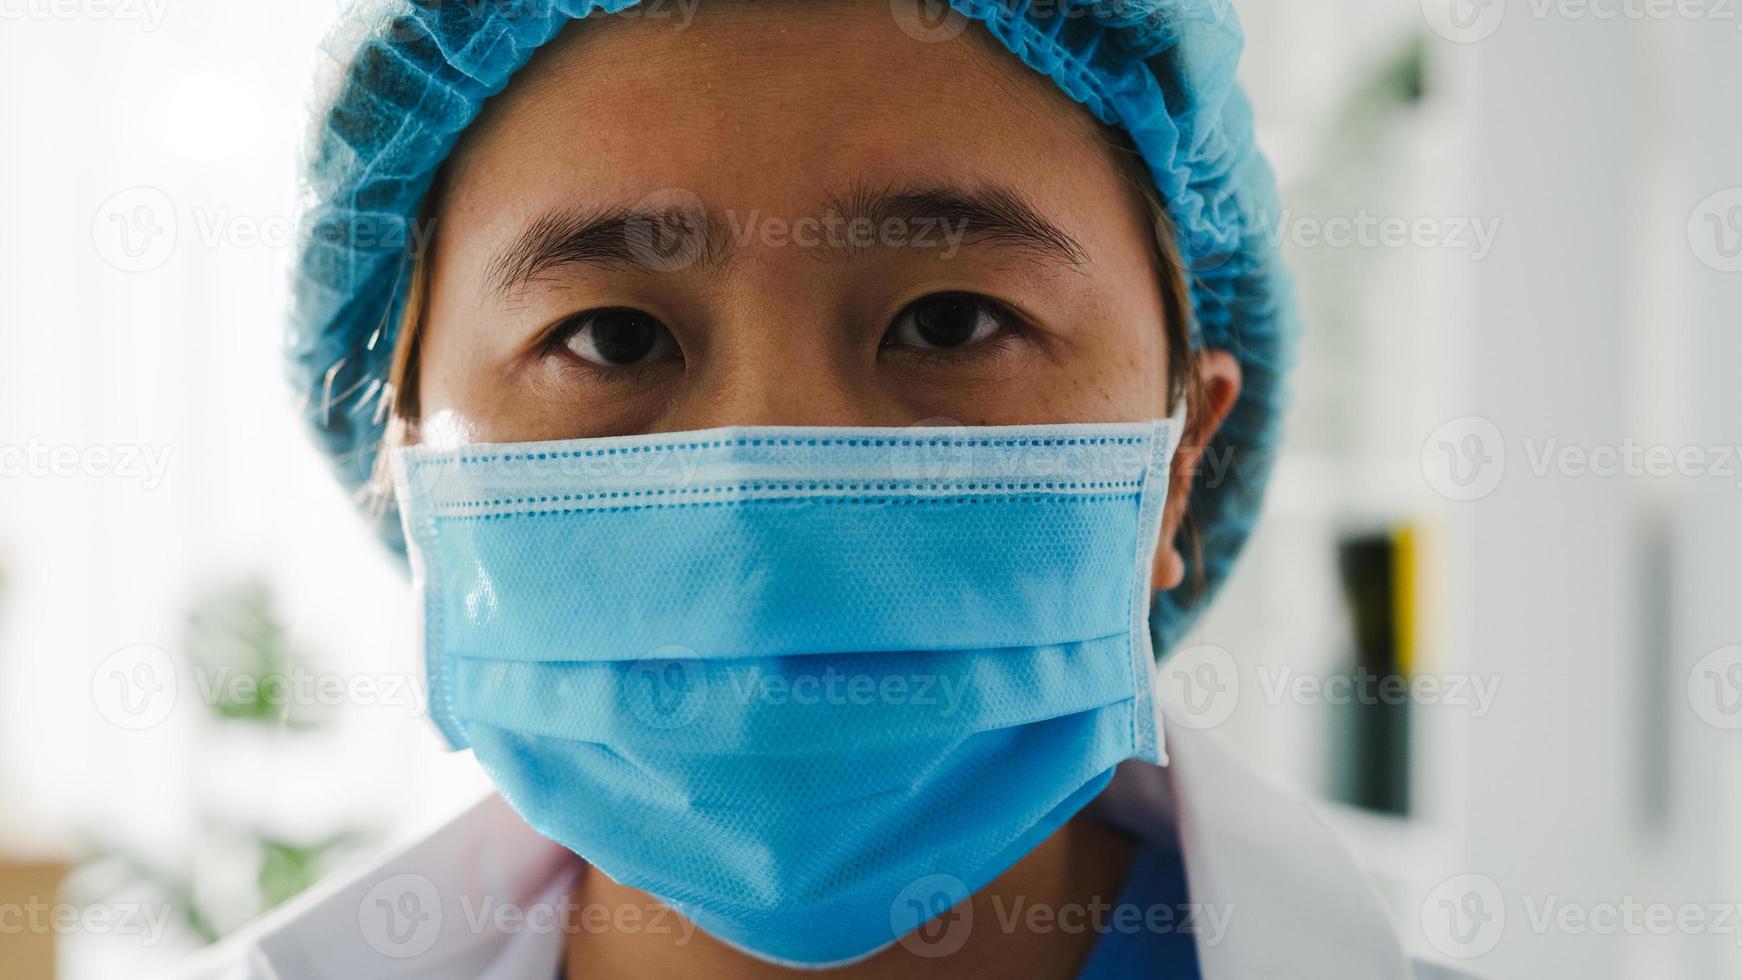 ung asiatisk damläkare eller sjuksköterska arbetskirurg förbereder sig för kirurgisk operation och trött öppnar ögonen och tittar på kameran på hälsosjukhusets kontor. social distansering, karantän för coronavirus. foto